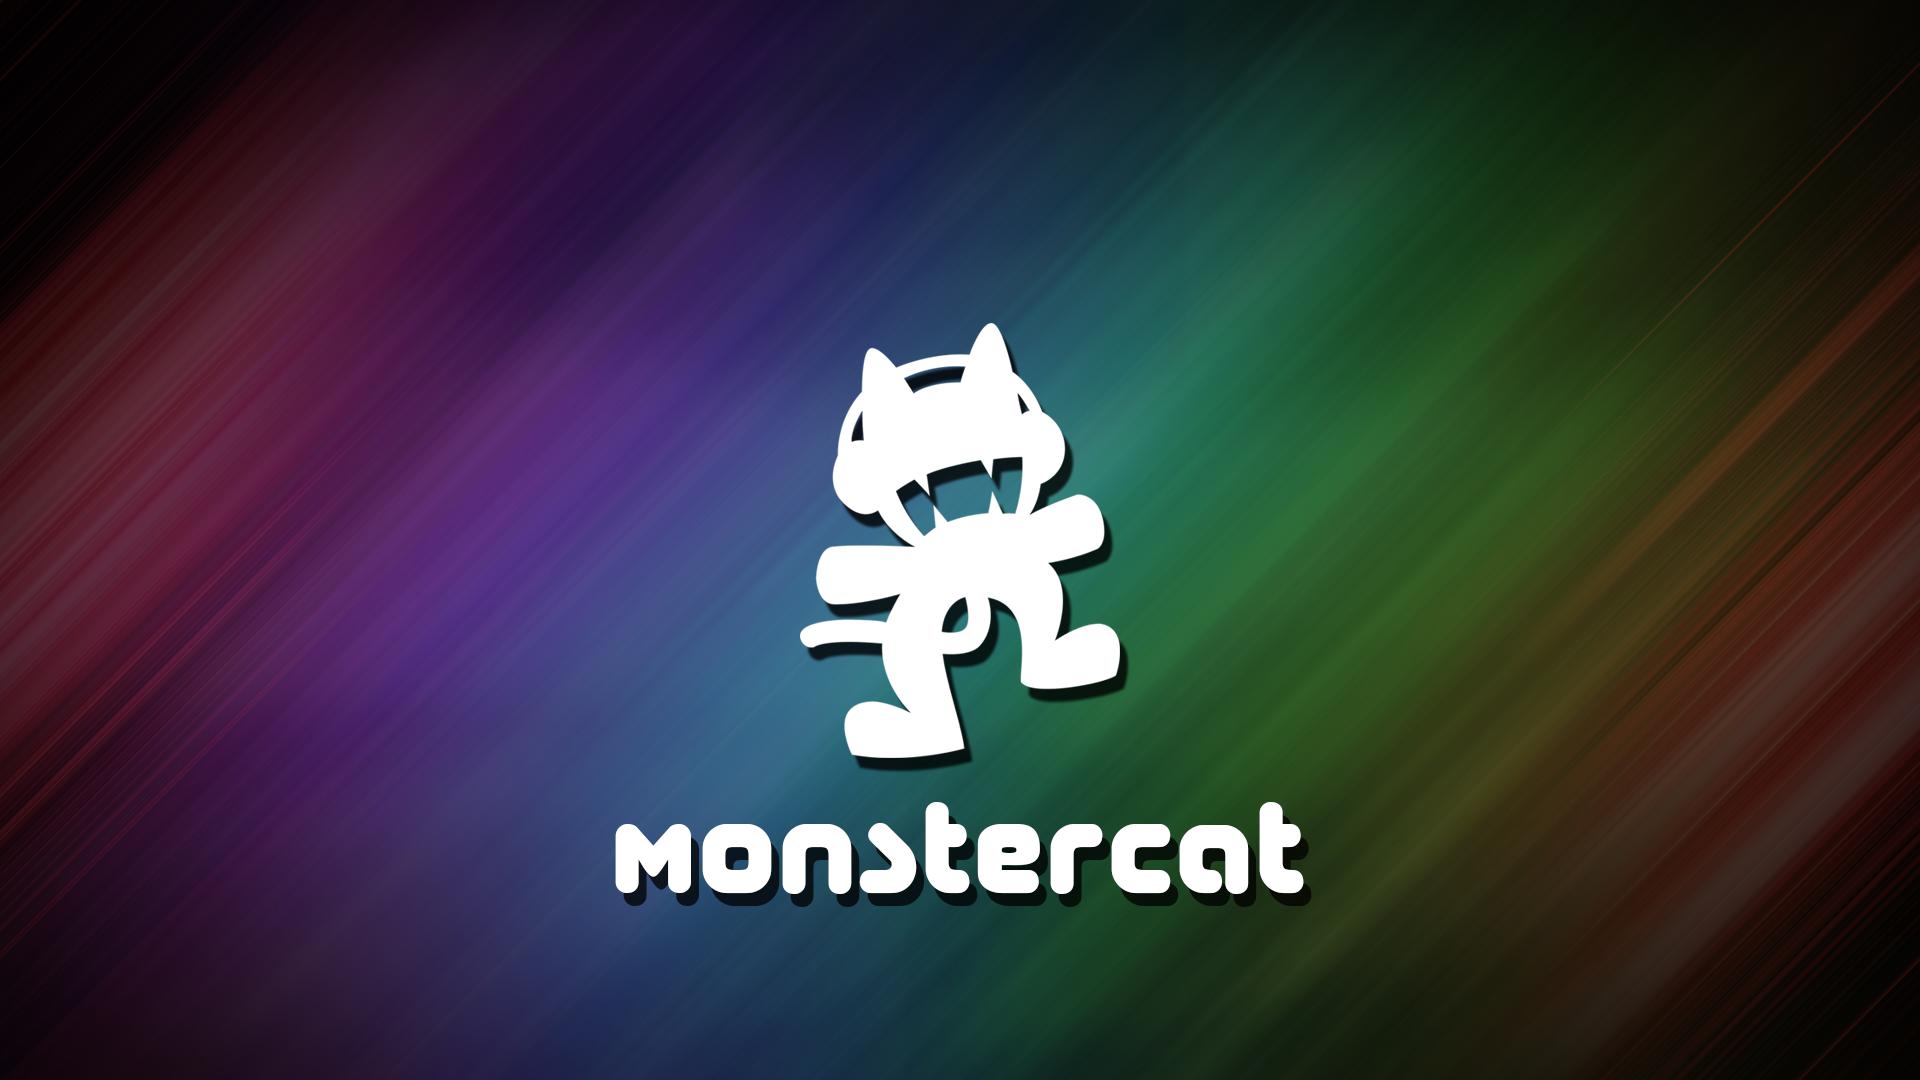 Another Monstercat Wallpaper - Monstercat Wallpaper Free , HD Wallpaper & Backgrounds